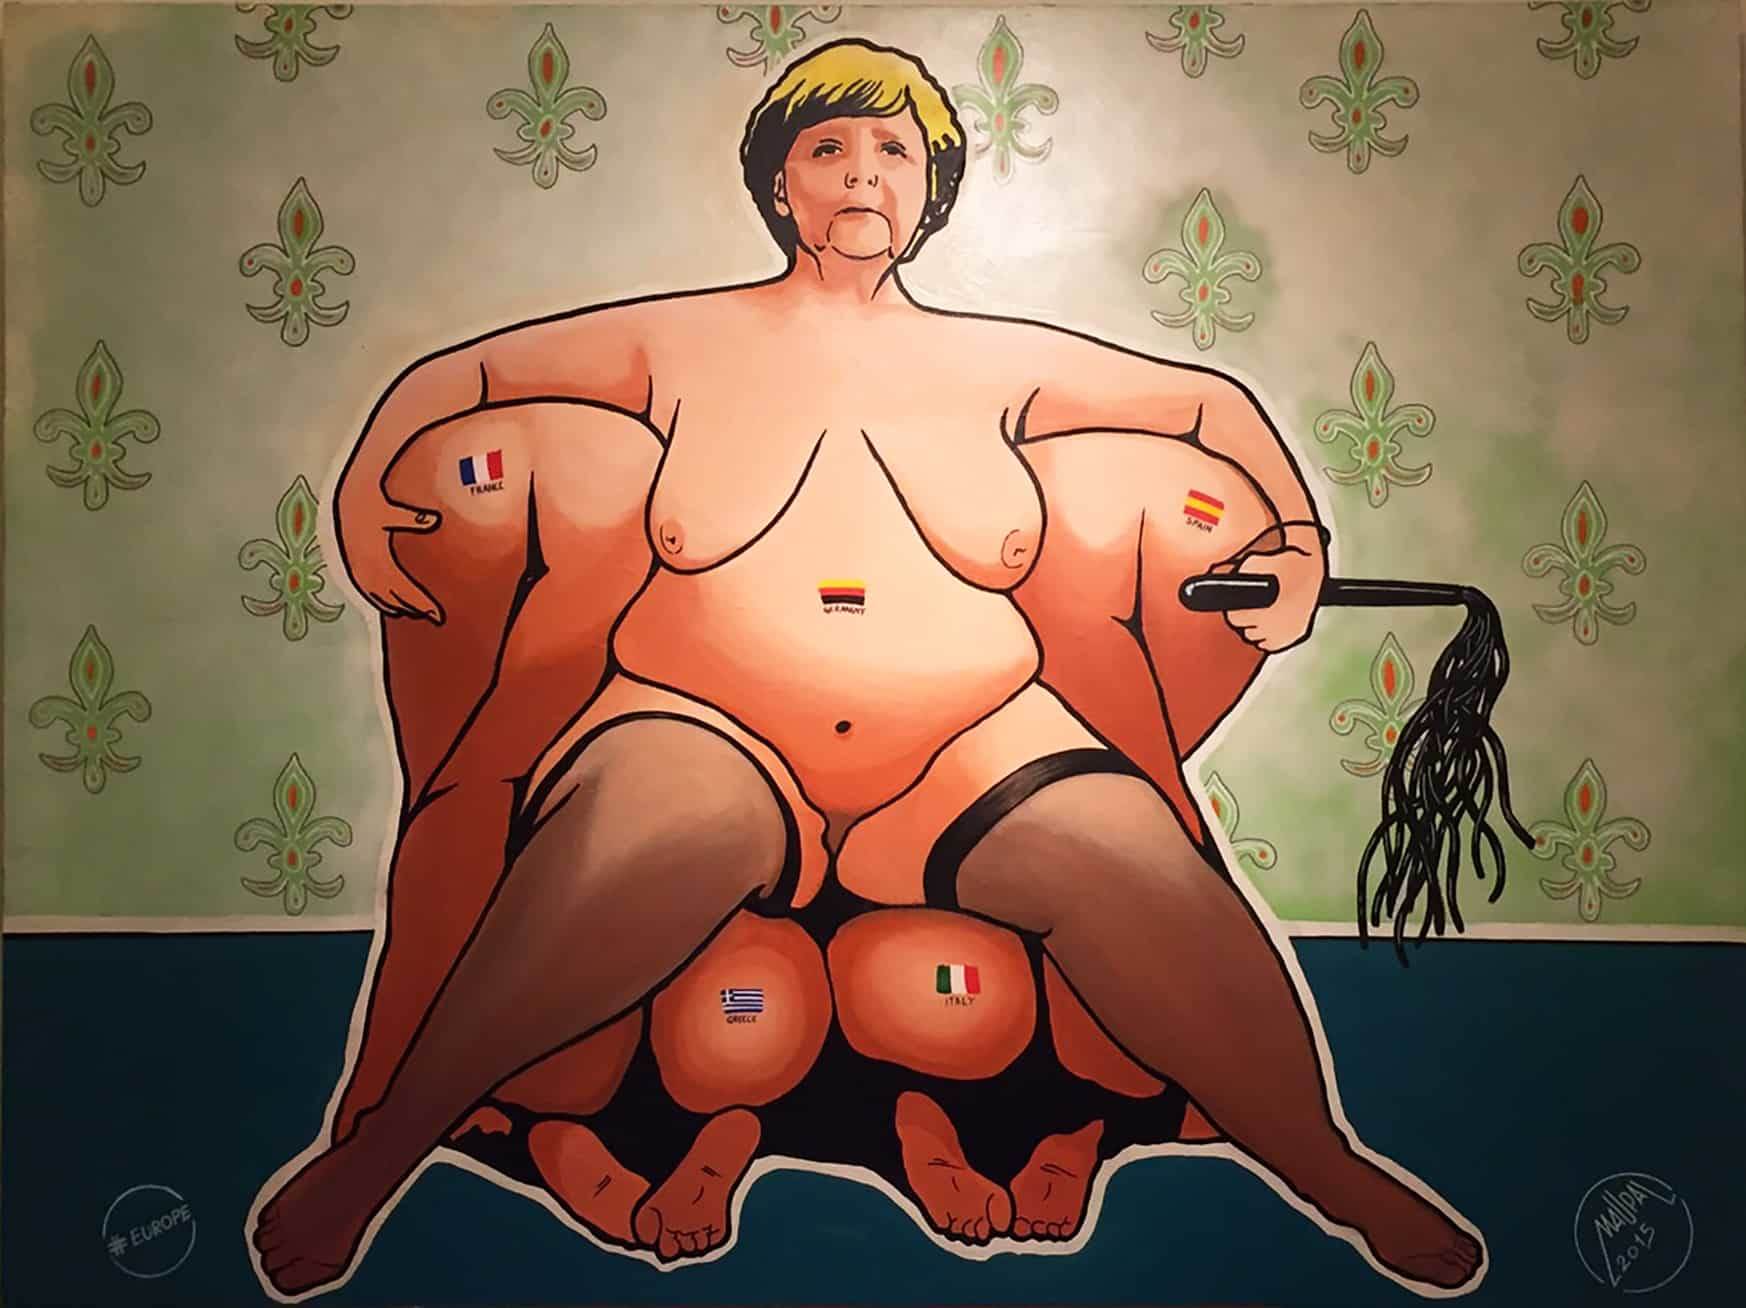 #europe_Merkel